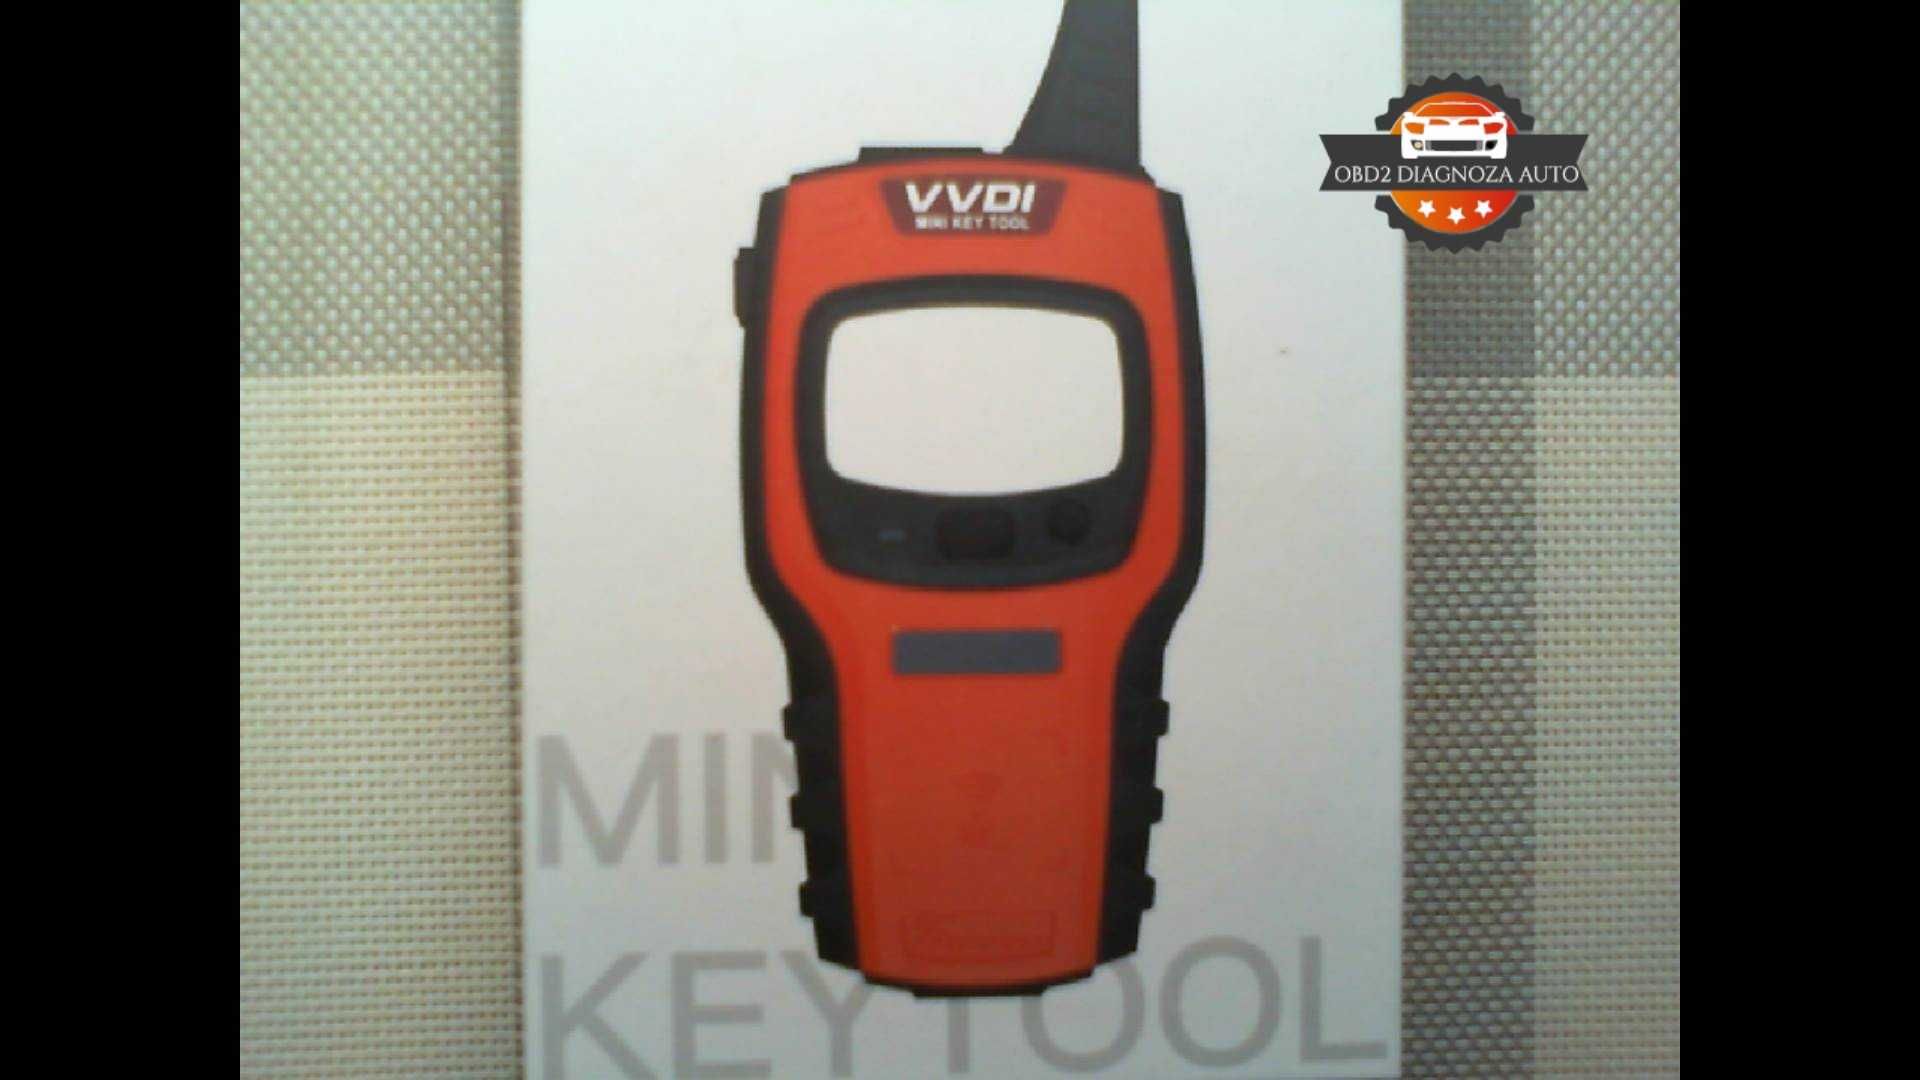 VVDI Mini Key Tool